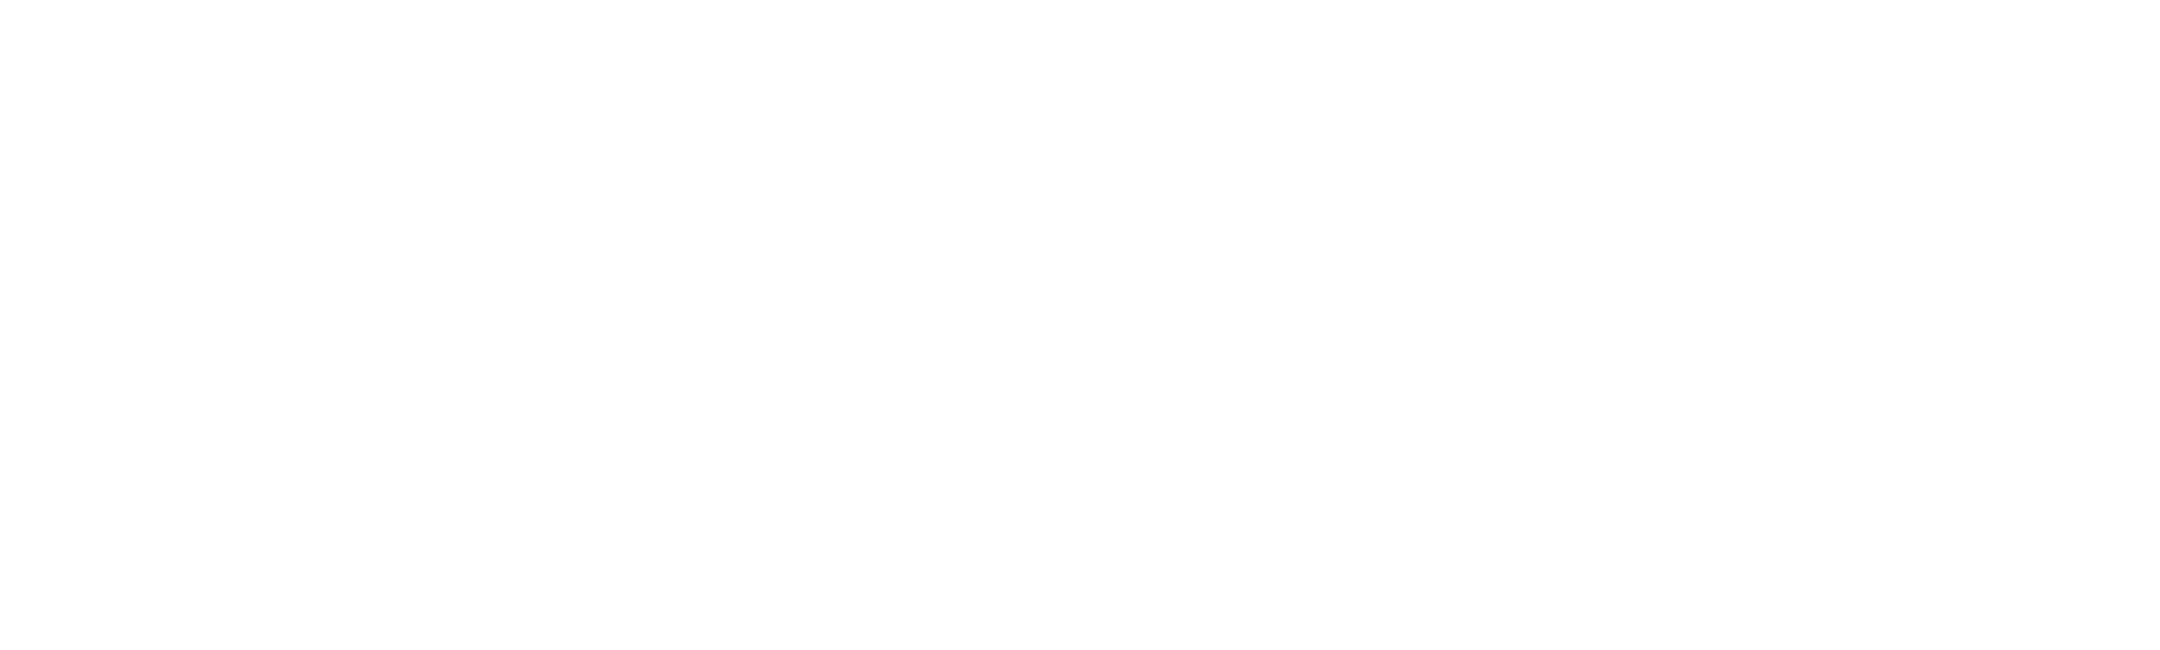 Процесор за плащане на криптовалута - FSFPAY.com